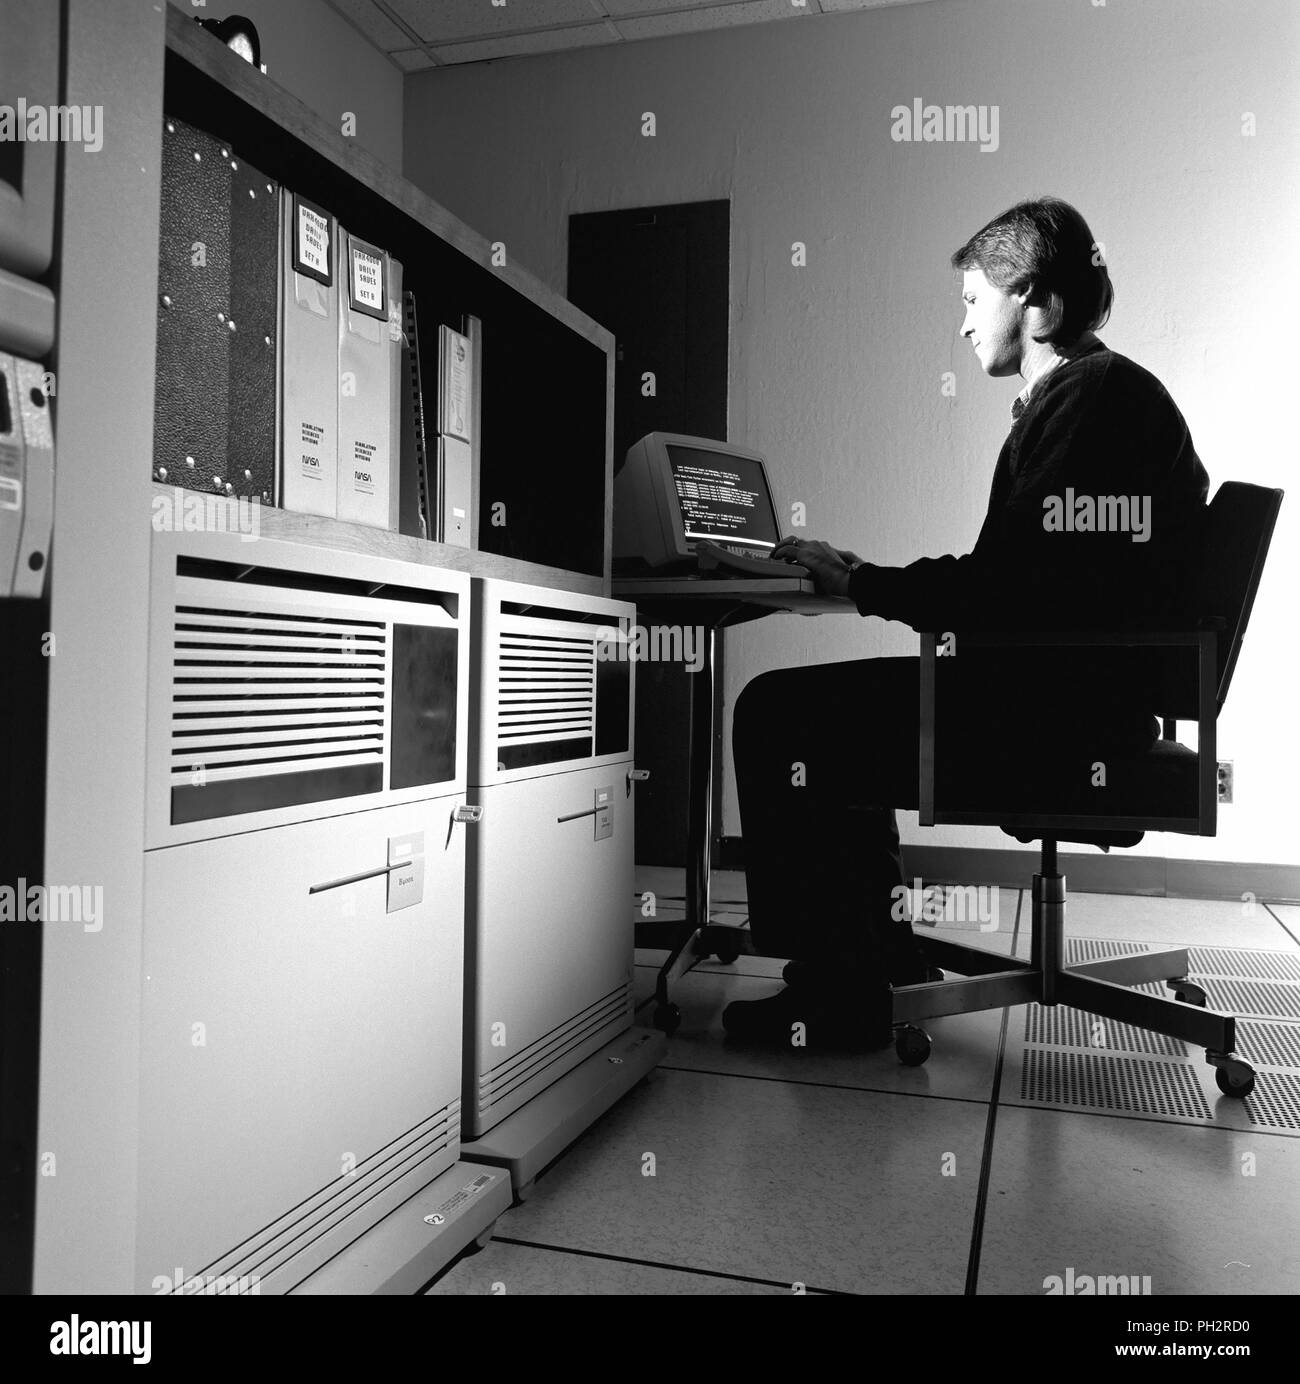 Faible angle de vue de l'homme à l'aide d'un ordinateur VAX-6000 pour la création graphique, 1993. Avec la permission des Archives Internet/NASA Ames. () Banque D'Images